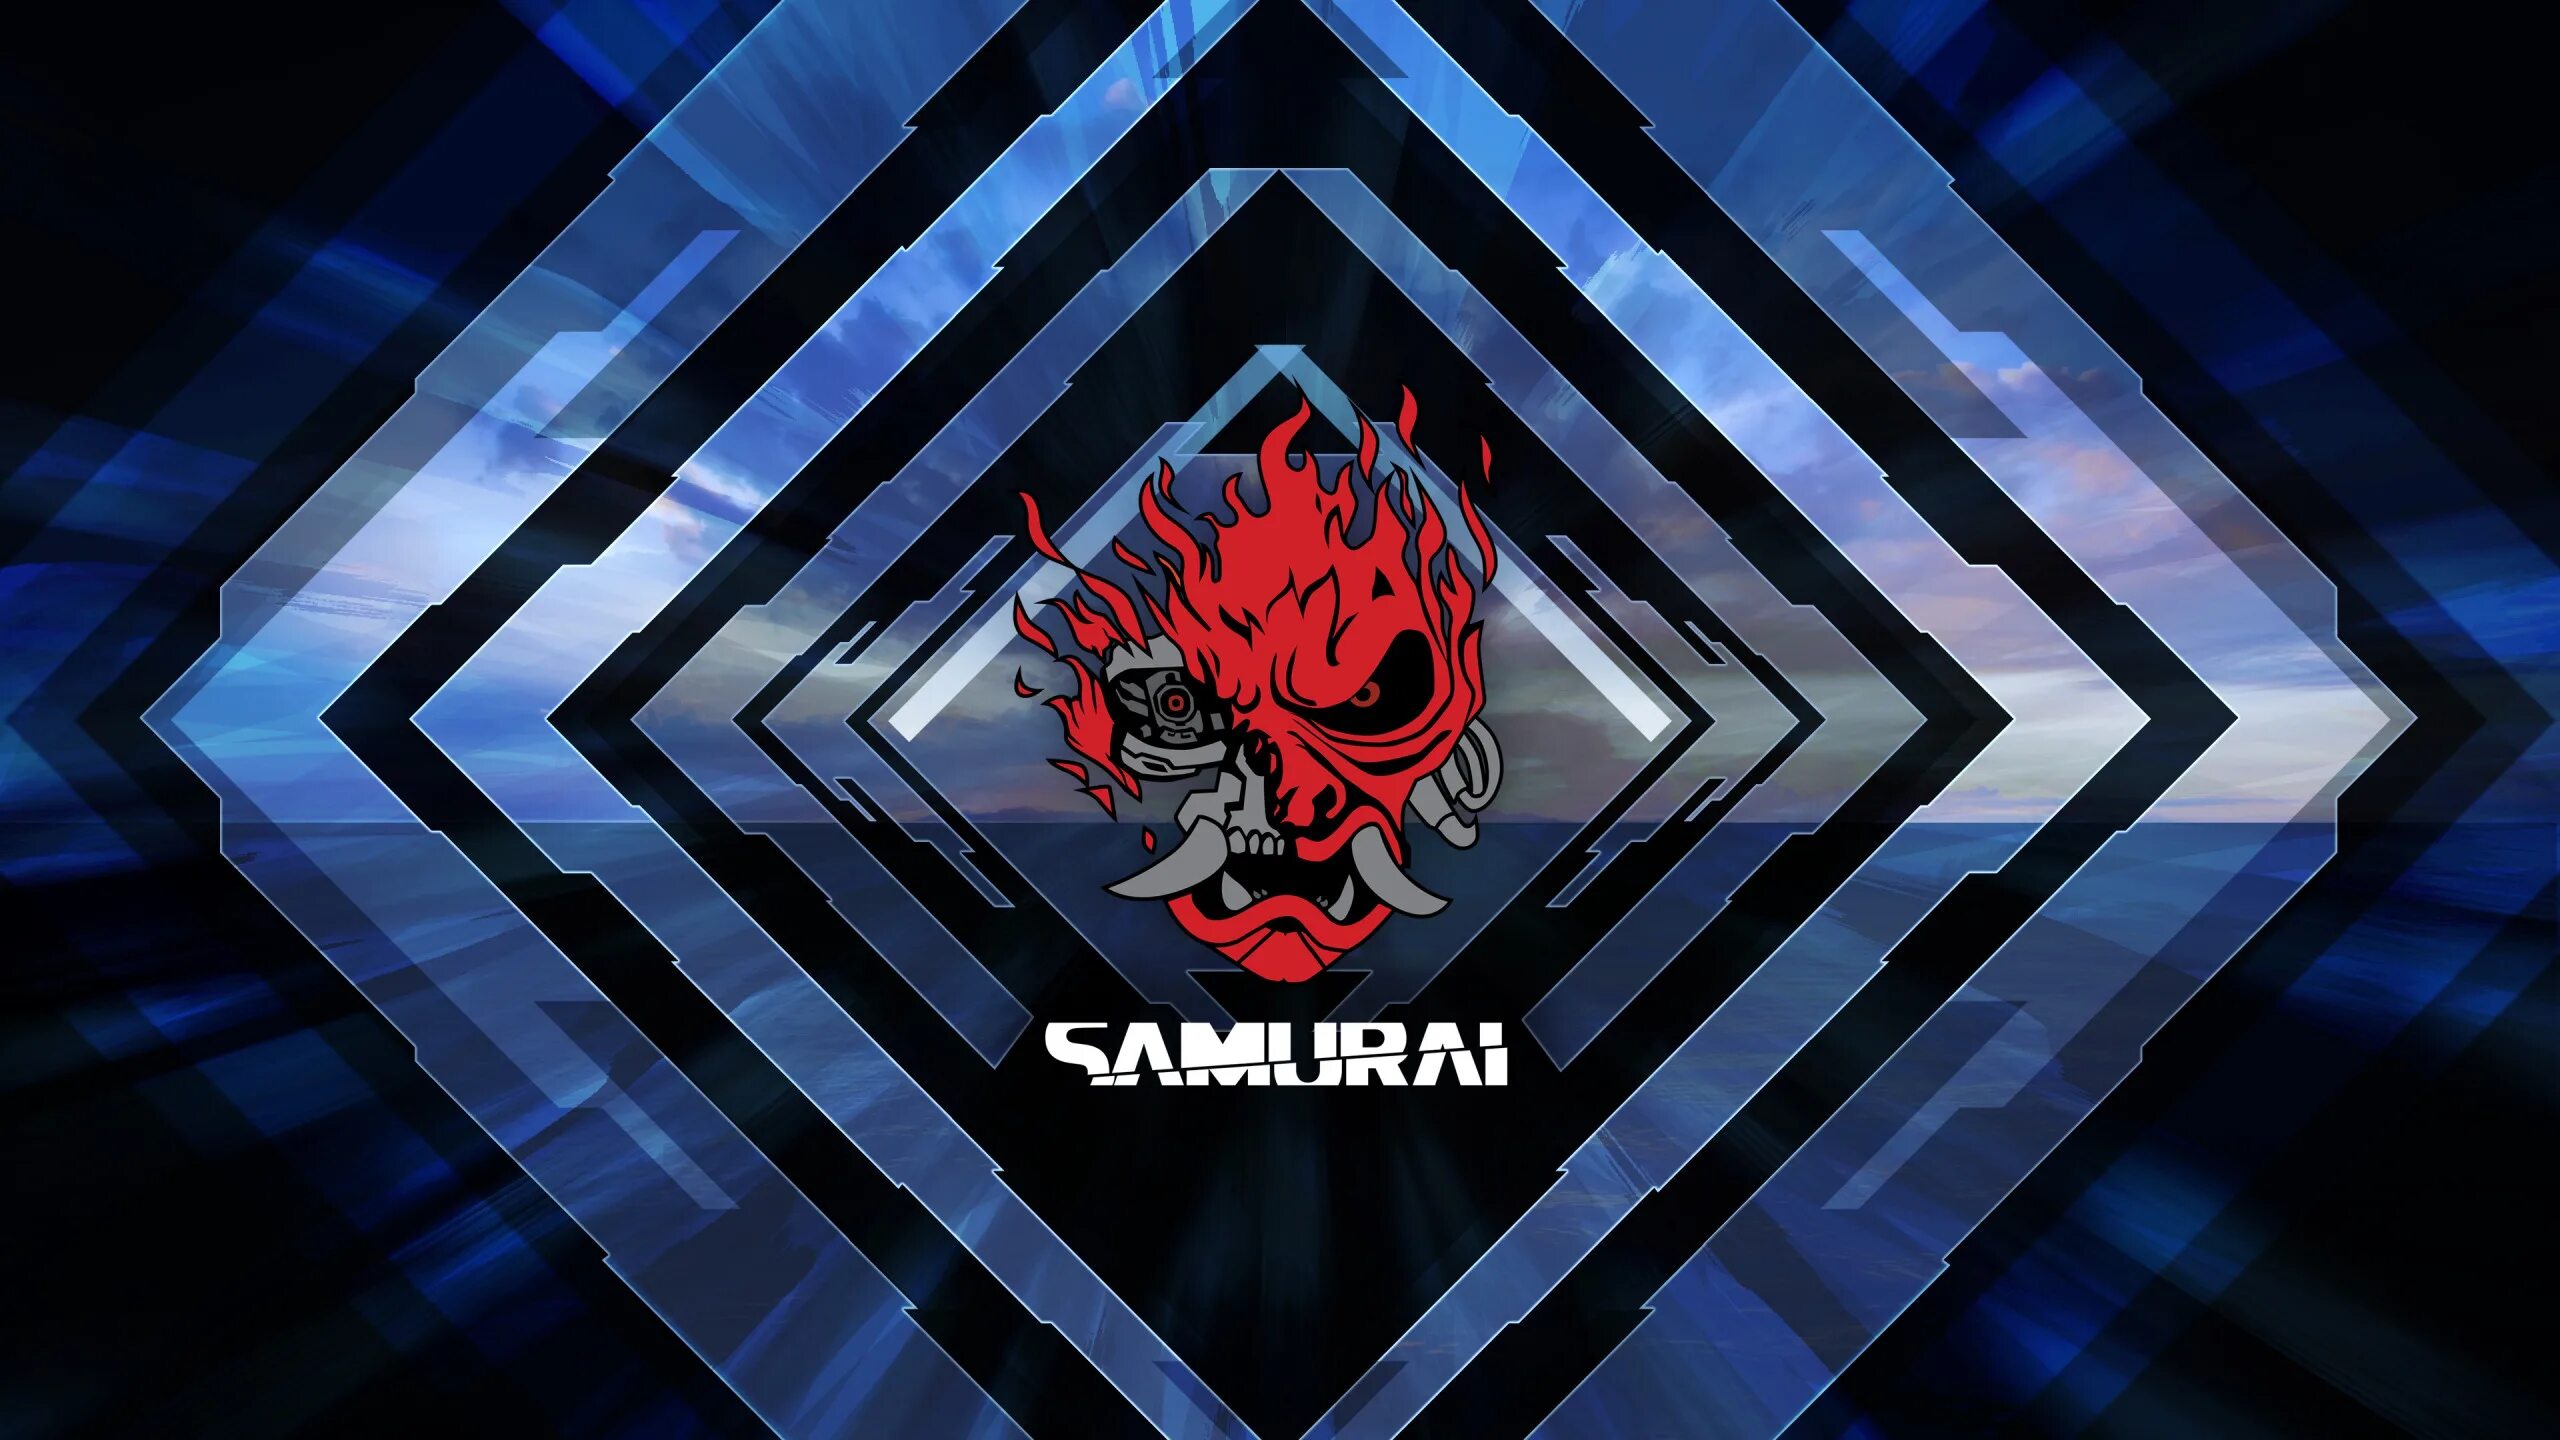 Эмблема игр будущего. Самурай киберпанк 2077. Cyberpunk 2077 Samurai logo. Группа Самурай киберпанк 2077.